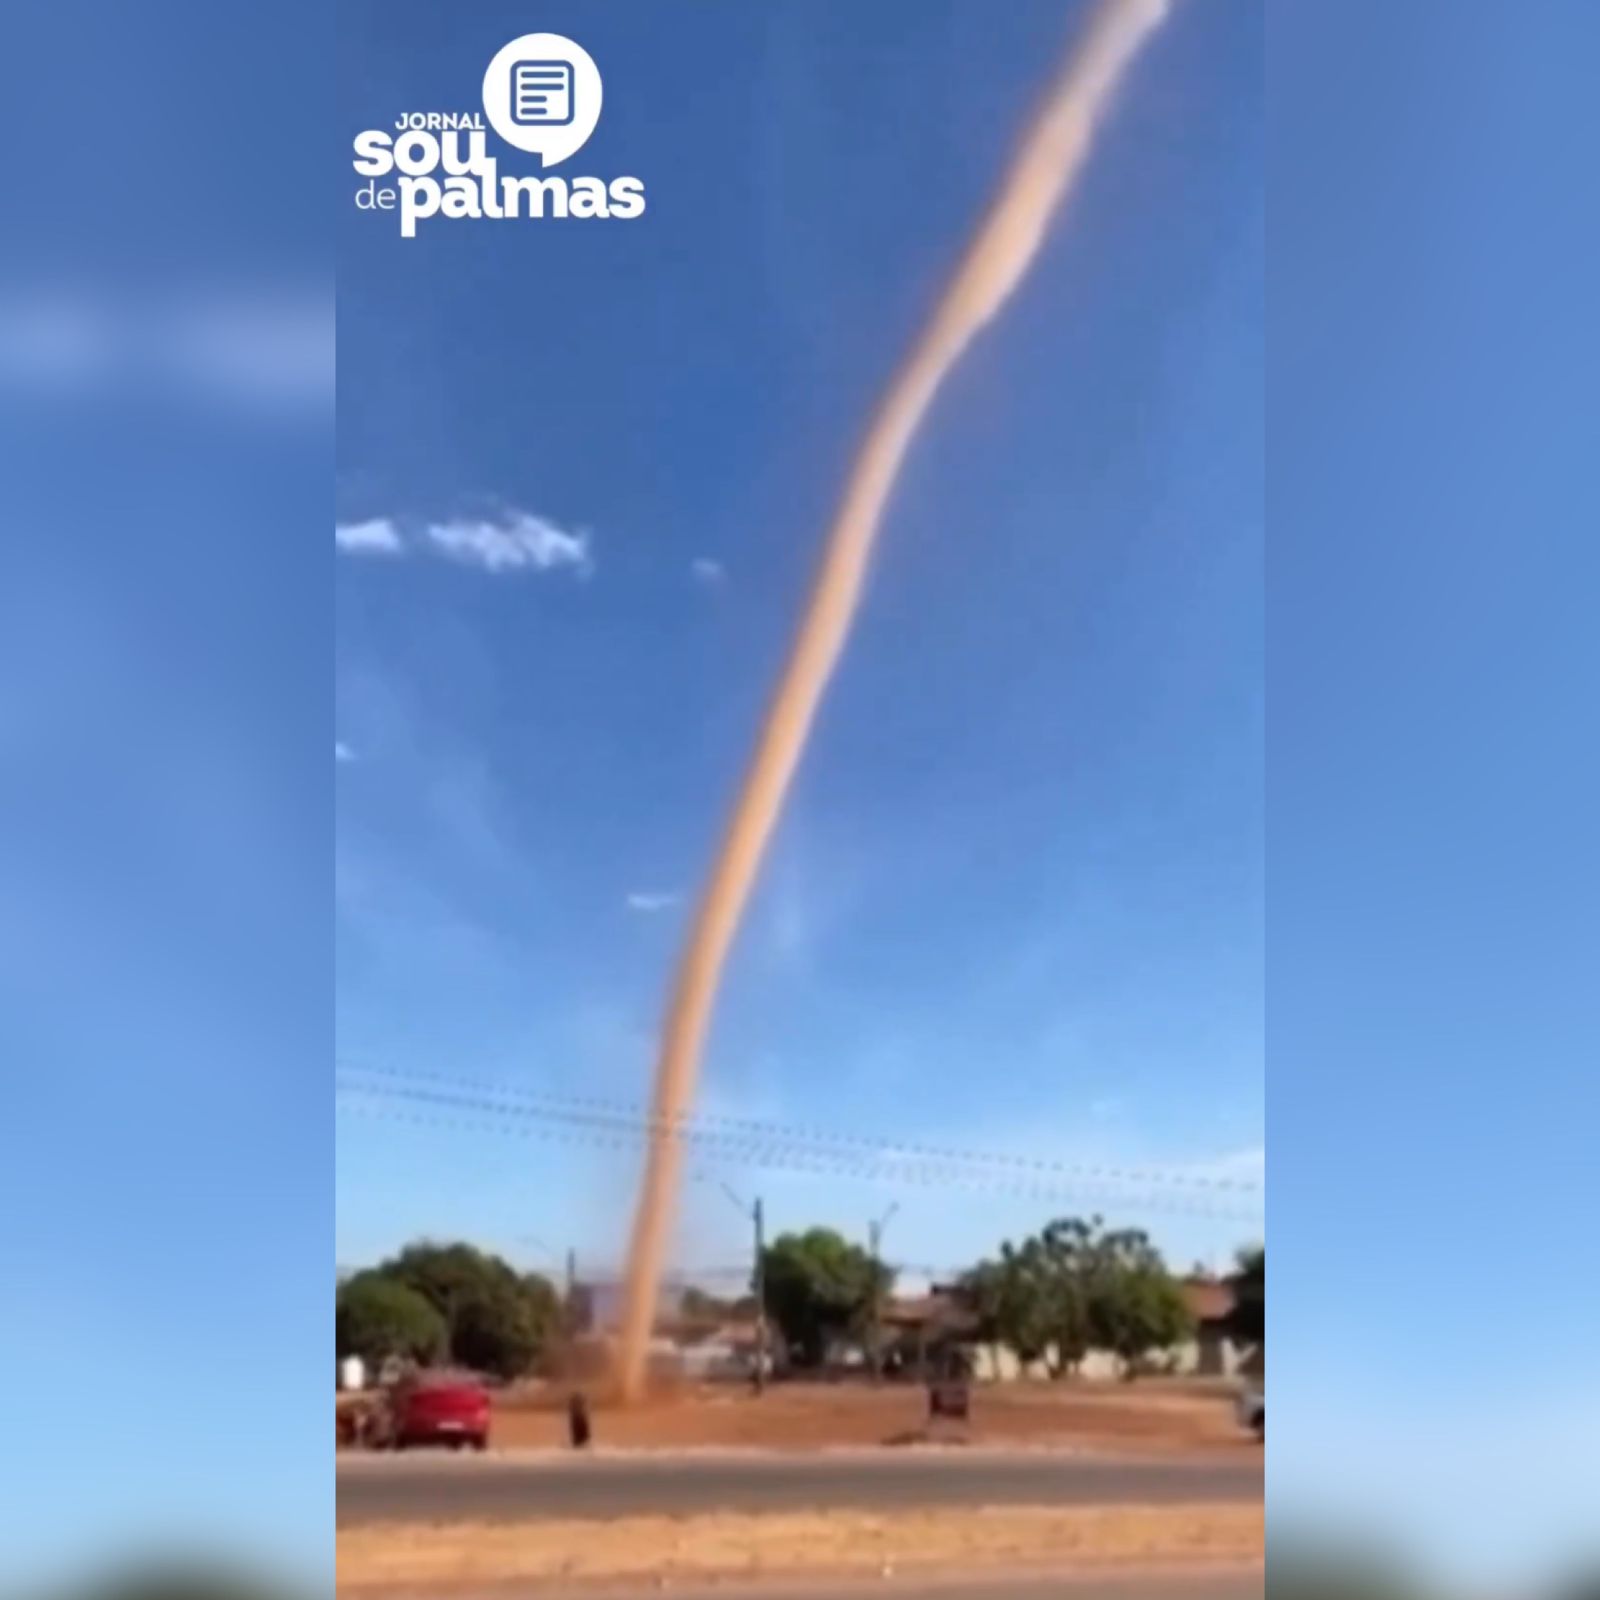 [VÍDEO] Imagens de um enorme redemoinho na região norte de Palmas surpreende internautas